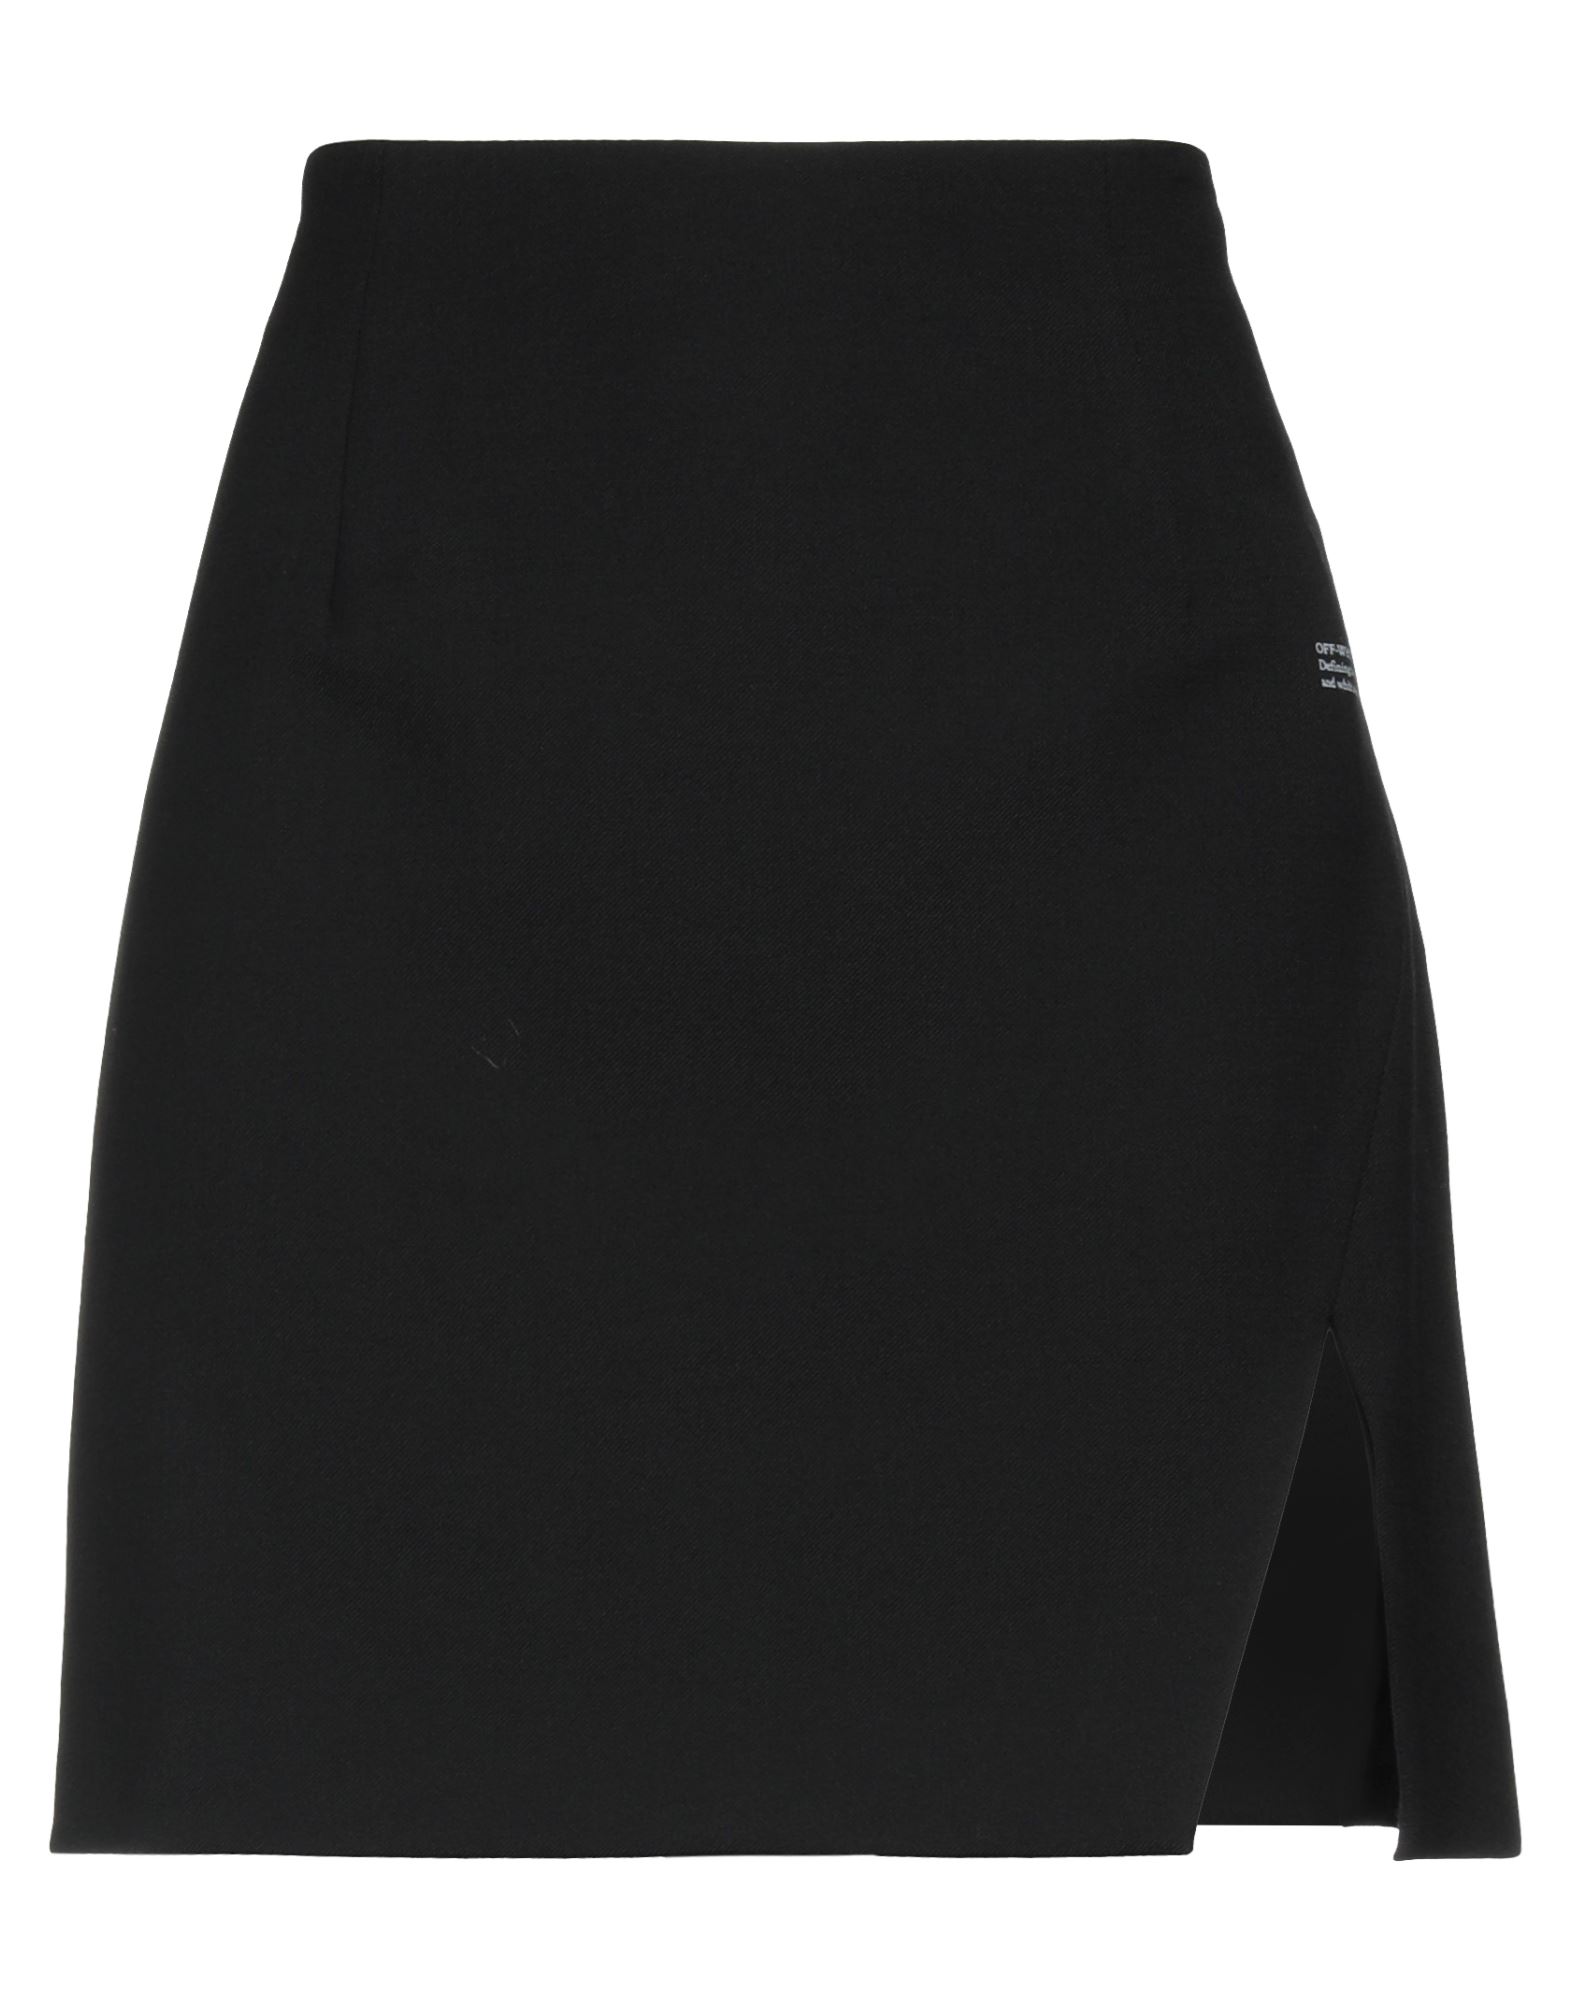 Off-white Woman Mini Skirt Black Size 4 Polyester, Virgin Wool, Elastane